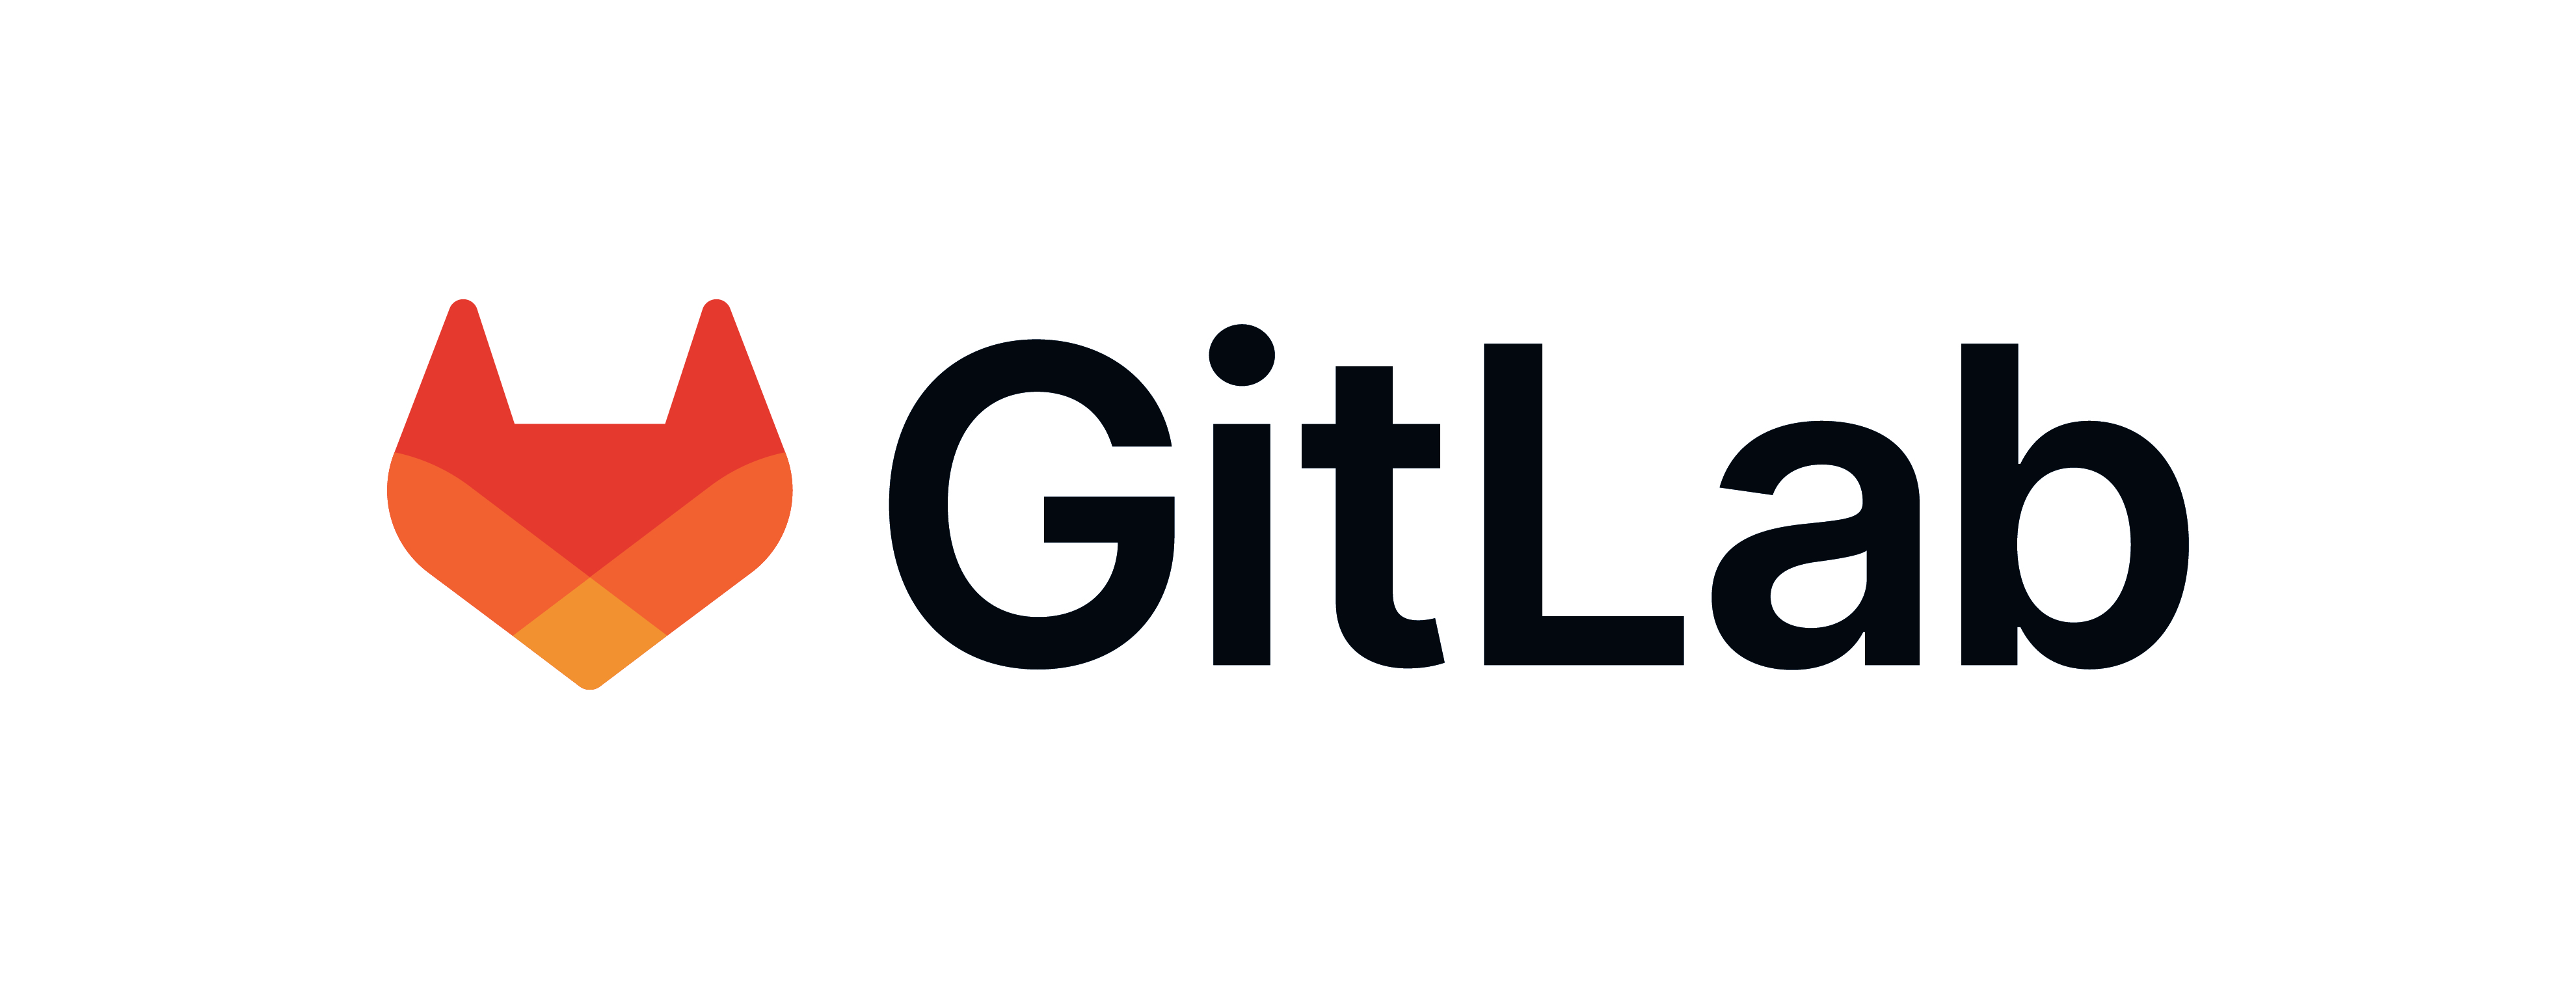 about.gitlab.com image